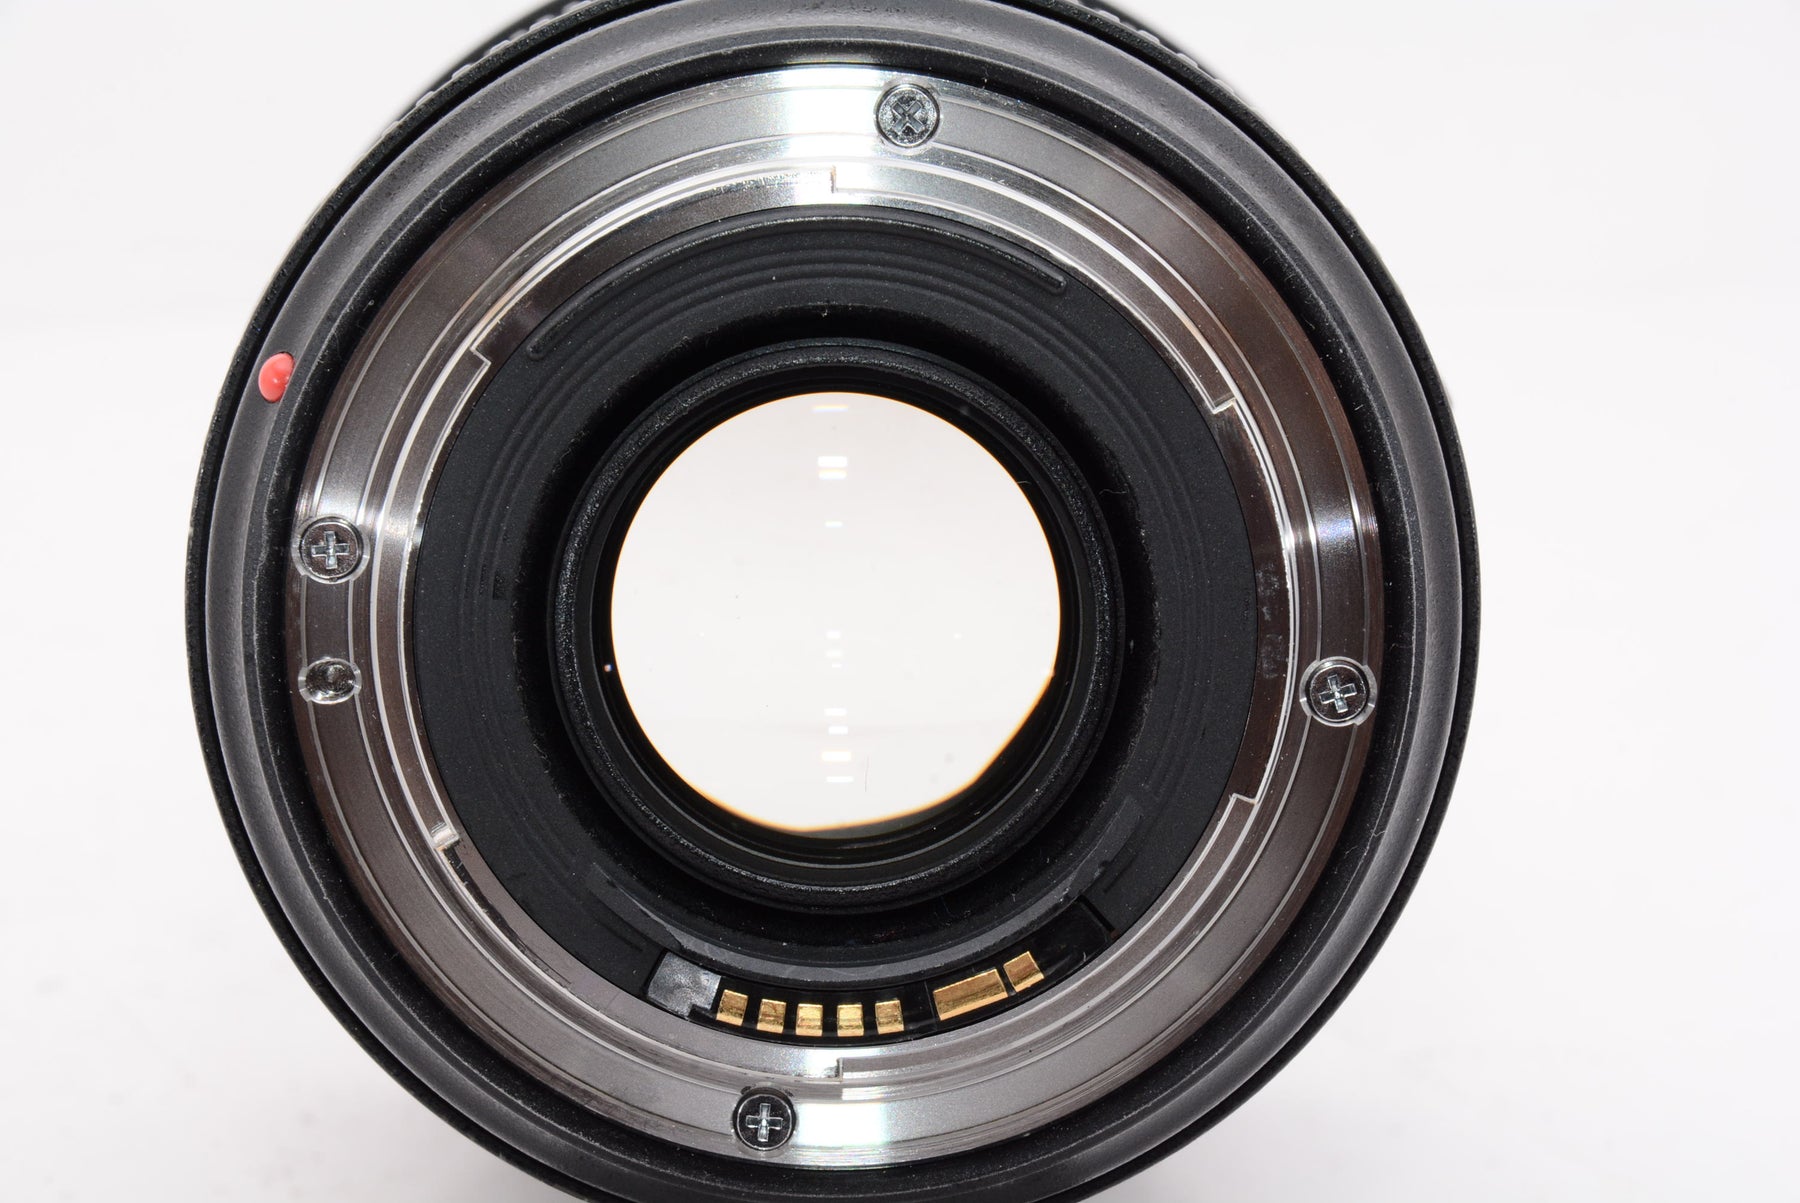 【オススメ】Canon 標準ズームレンズ EF24-70mm F2.8L II USM フルサイズ対応